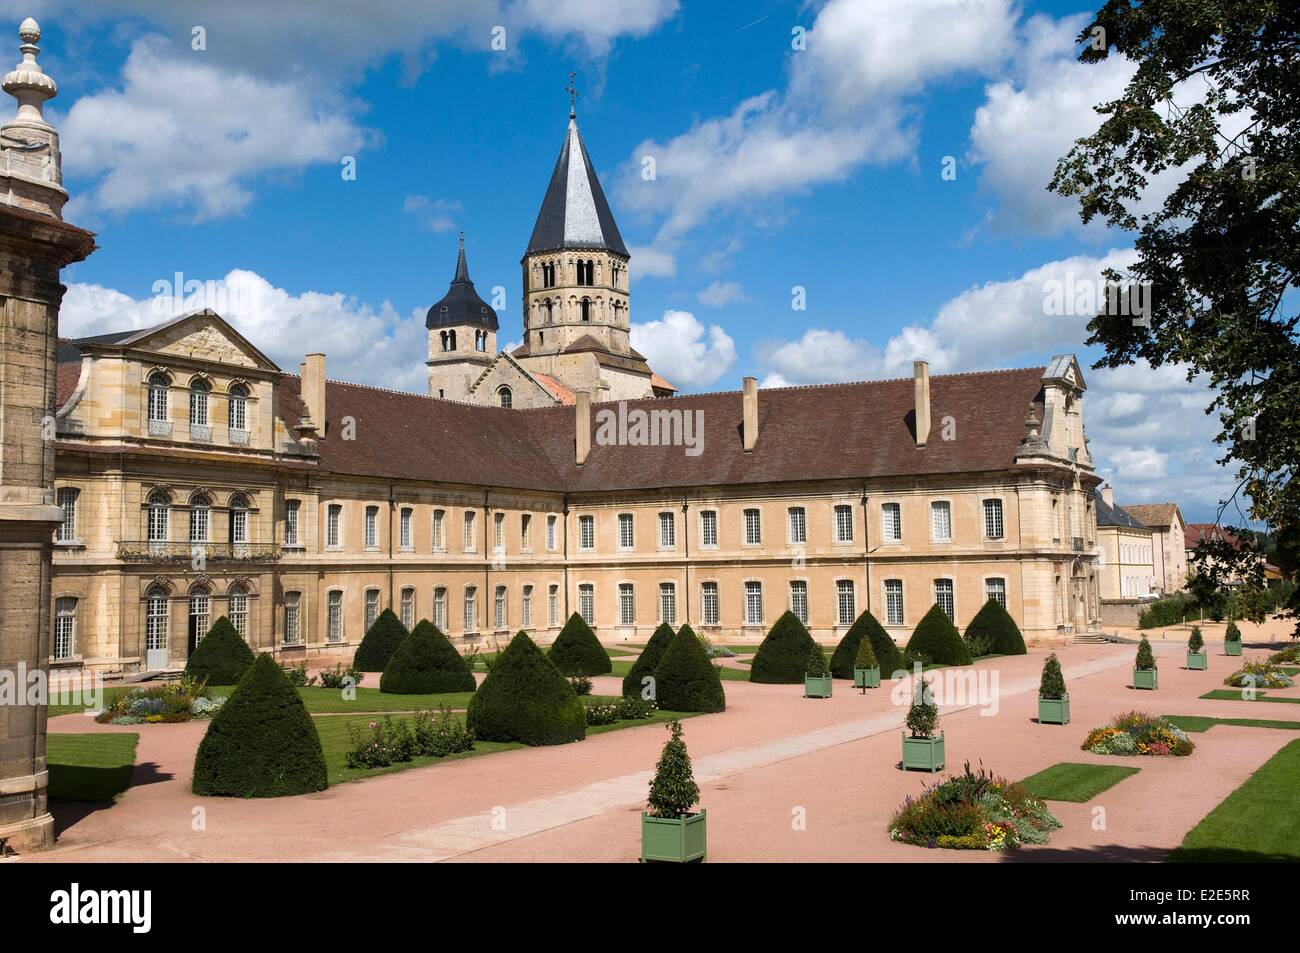 France, Saône et Loire, l'Abbaye de Cluny de Cluny, l'eau bénite et l'horloge de la tour, les bâtiments de l'abbaye et de l'École des Arts et Métiers Banque D'Images